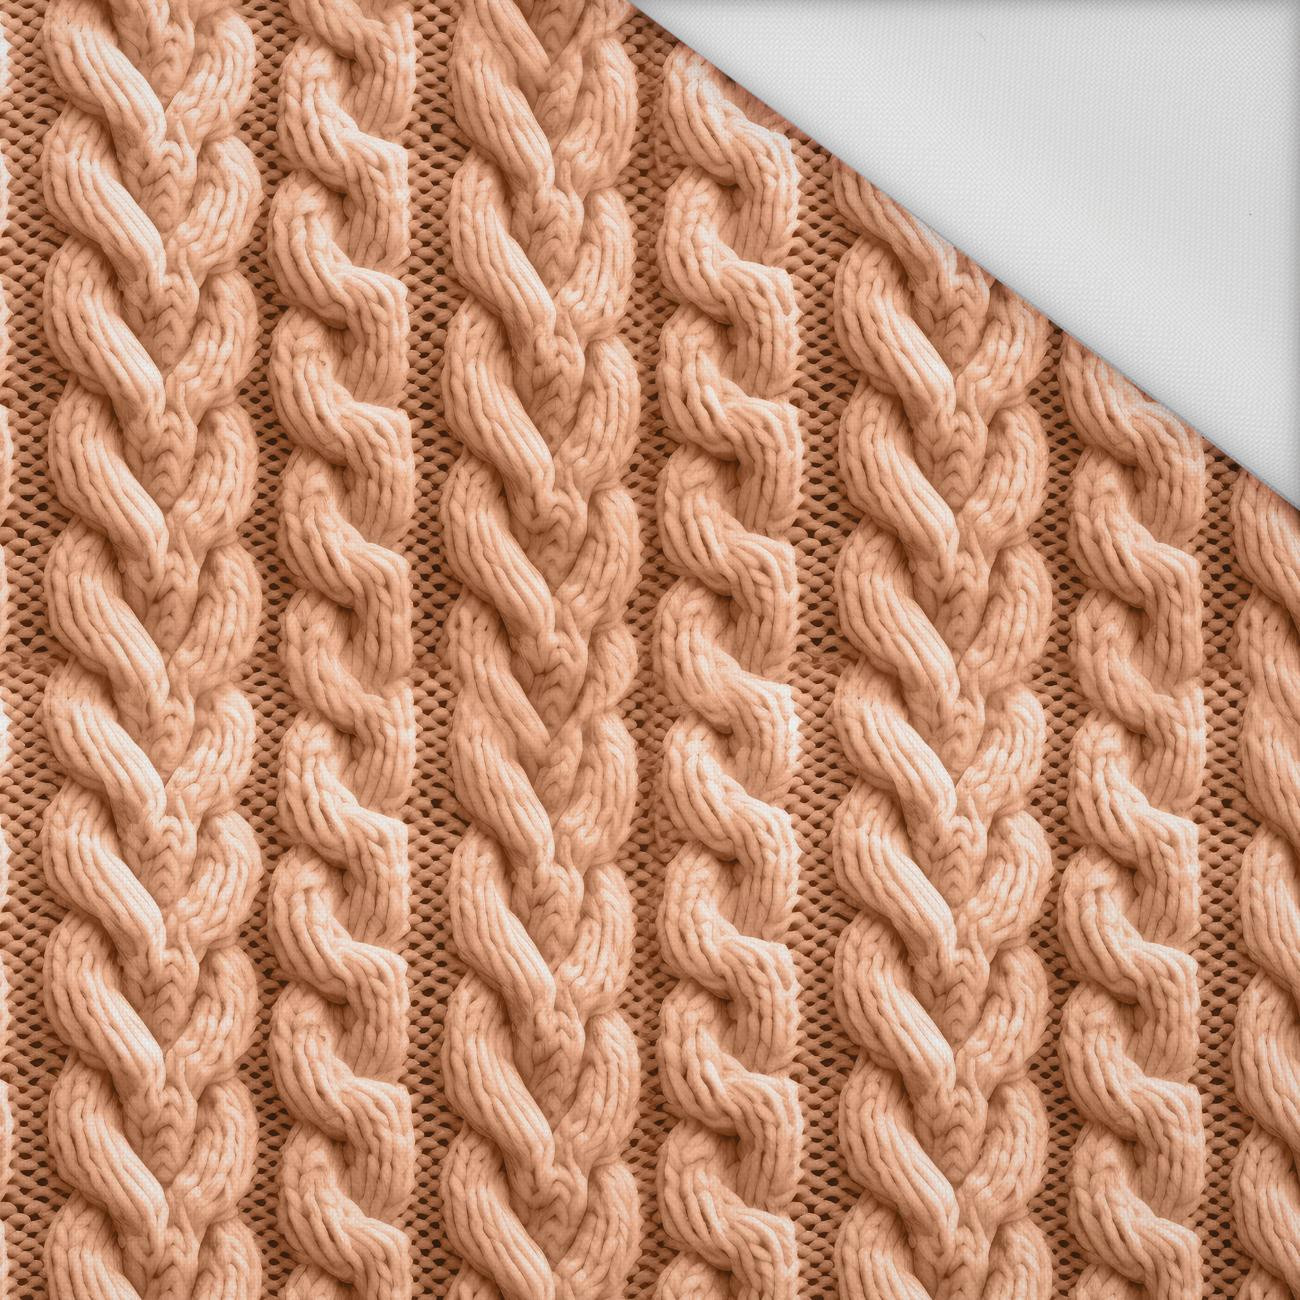 IMITATION SWEATER PAT. 4 / peach fuzz  - Waterproof woven fabric